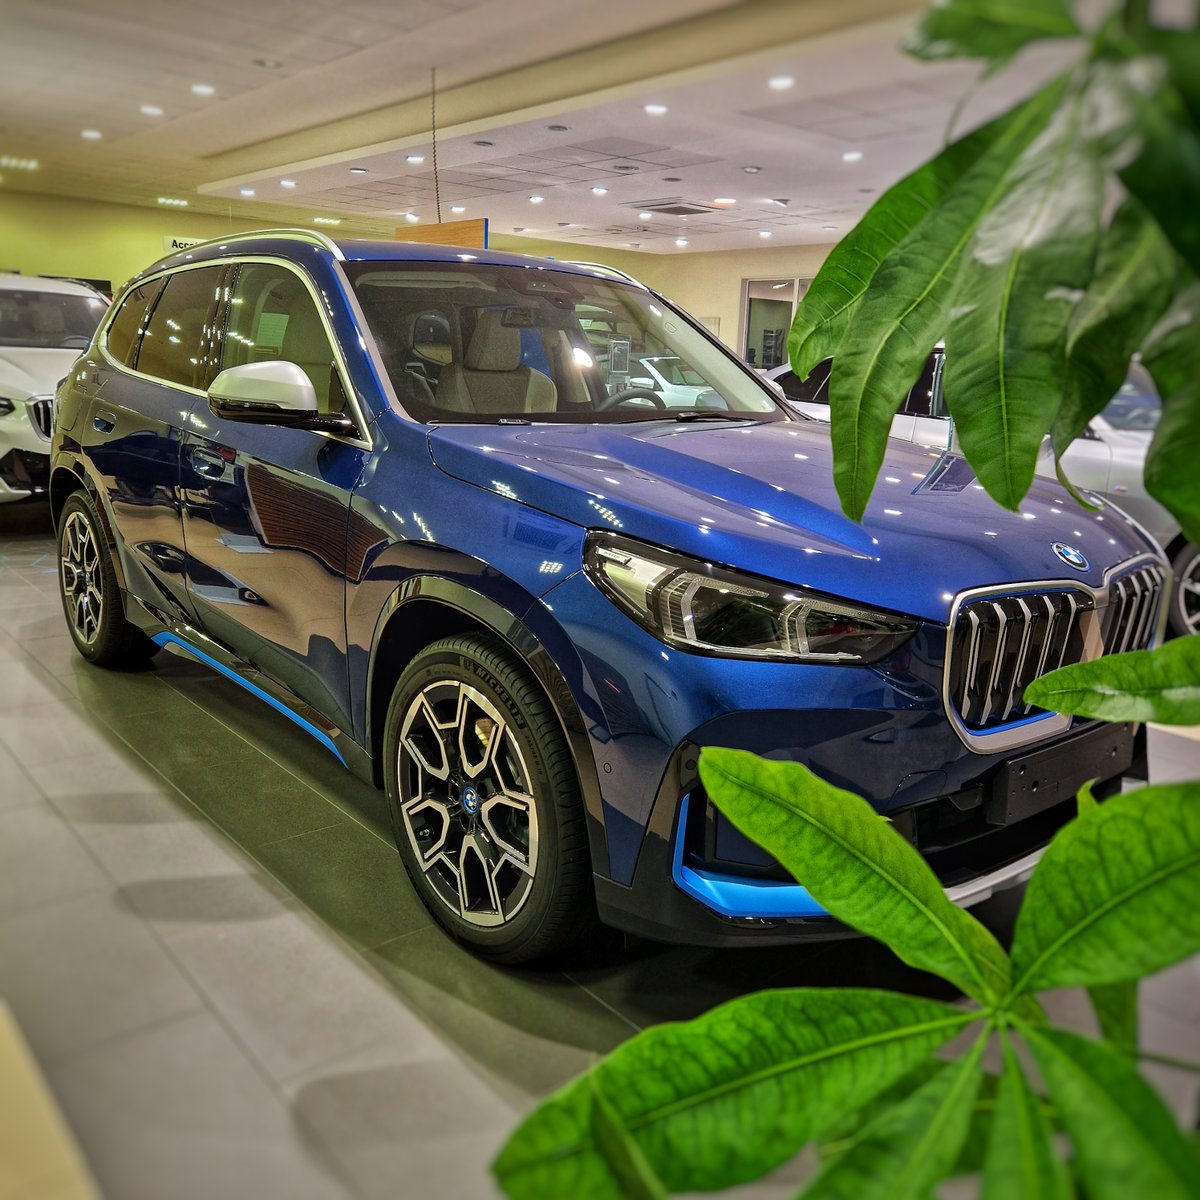 Entra nella mobilità elettrica di BMW con la BMW iX1: Versatilità e Funzionalità.
BMW iX1 con l'innovativo Curved Display, spaziosa e compatta. 

▶️ Vieni a scoprirla da Paradiso ◀️

#BMW #MobilitaElettrica #TheiX1 #iX1 #ParadisoBMW #CurvedDisplay